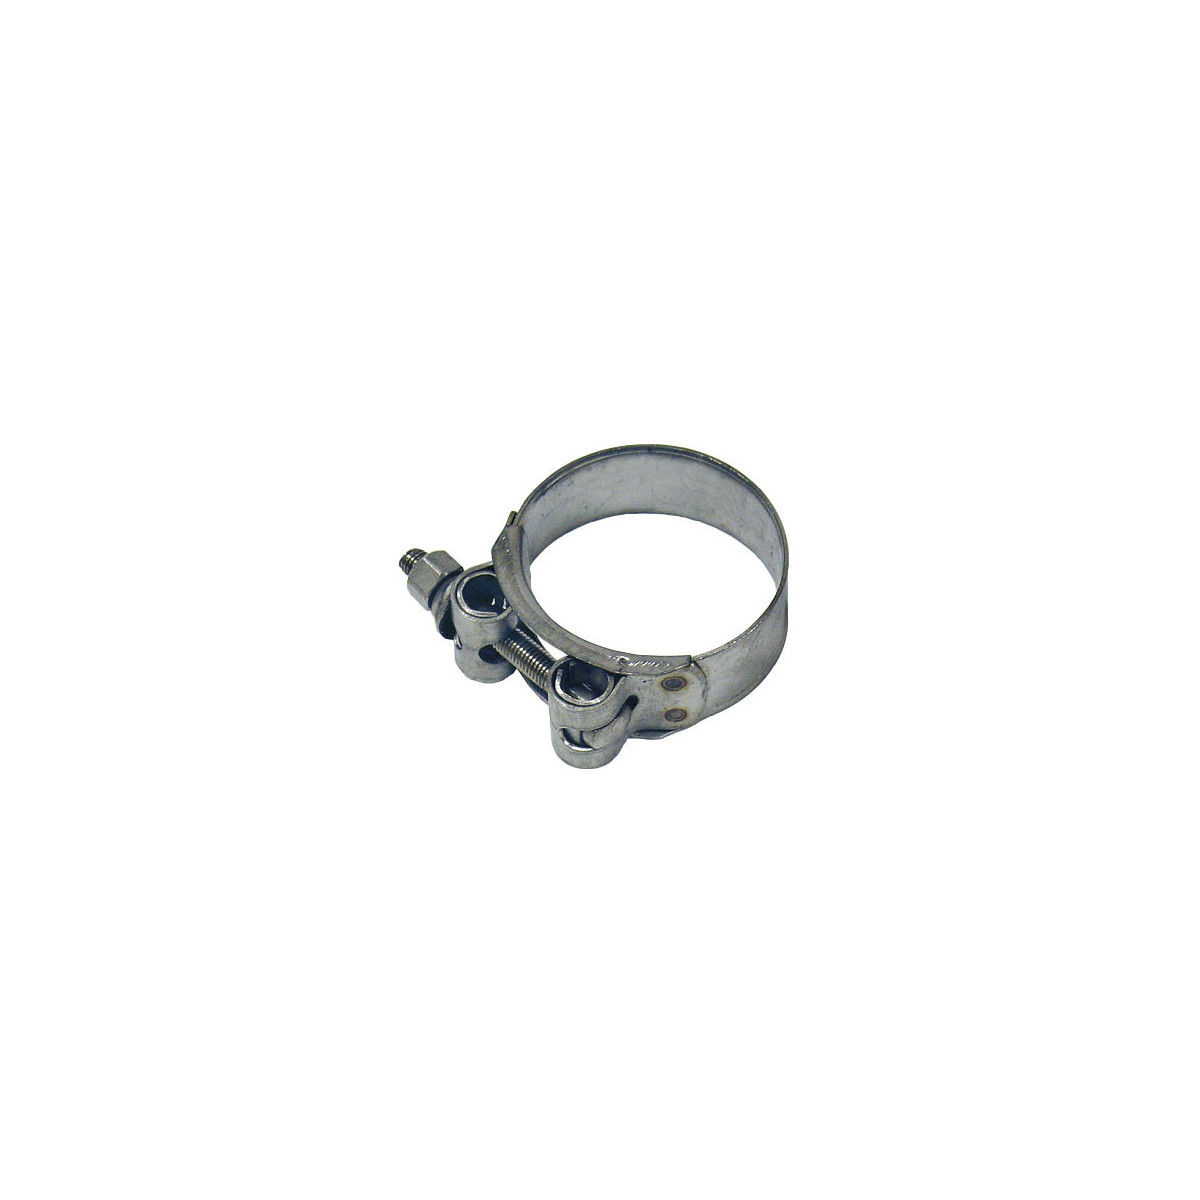 collier de serrage INOX HD 32-35 mm